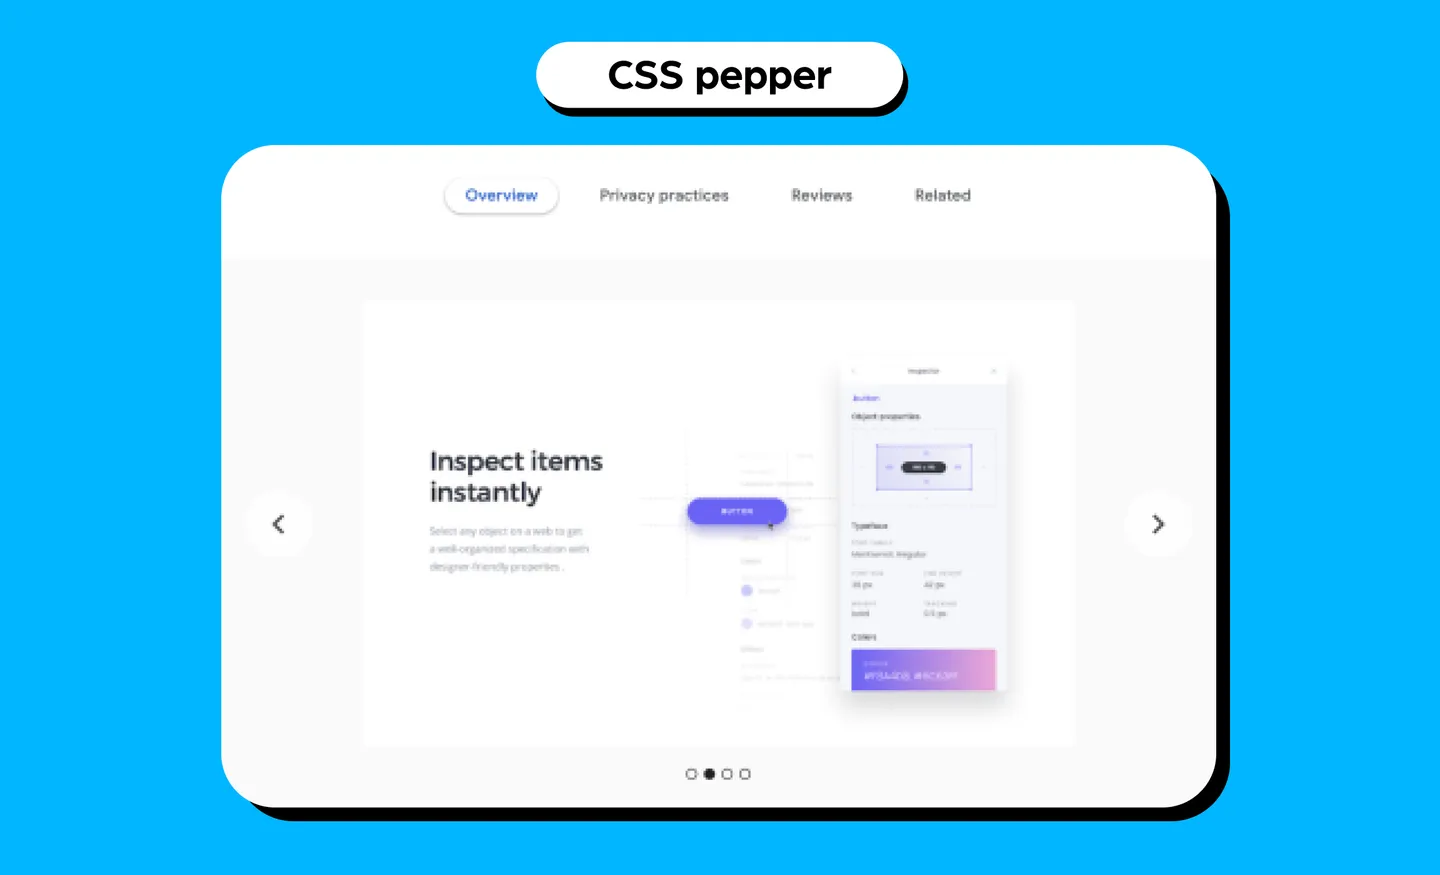 CSS Peeper